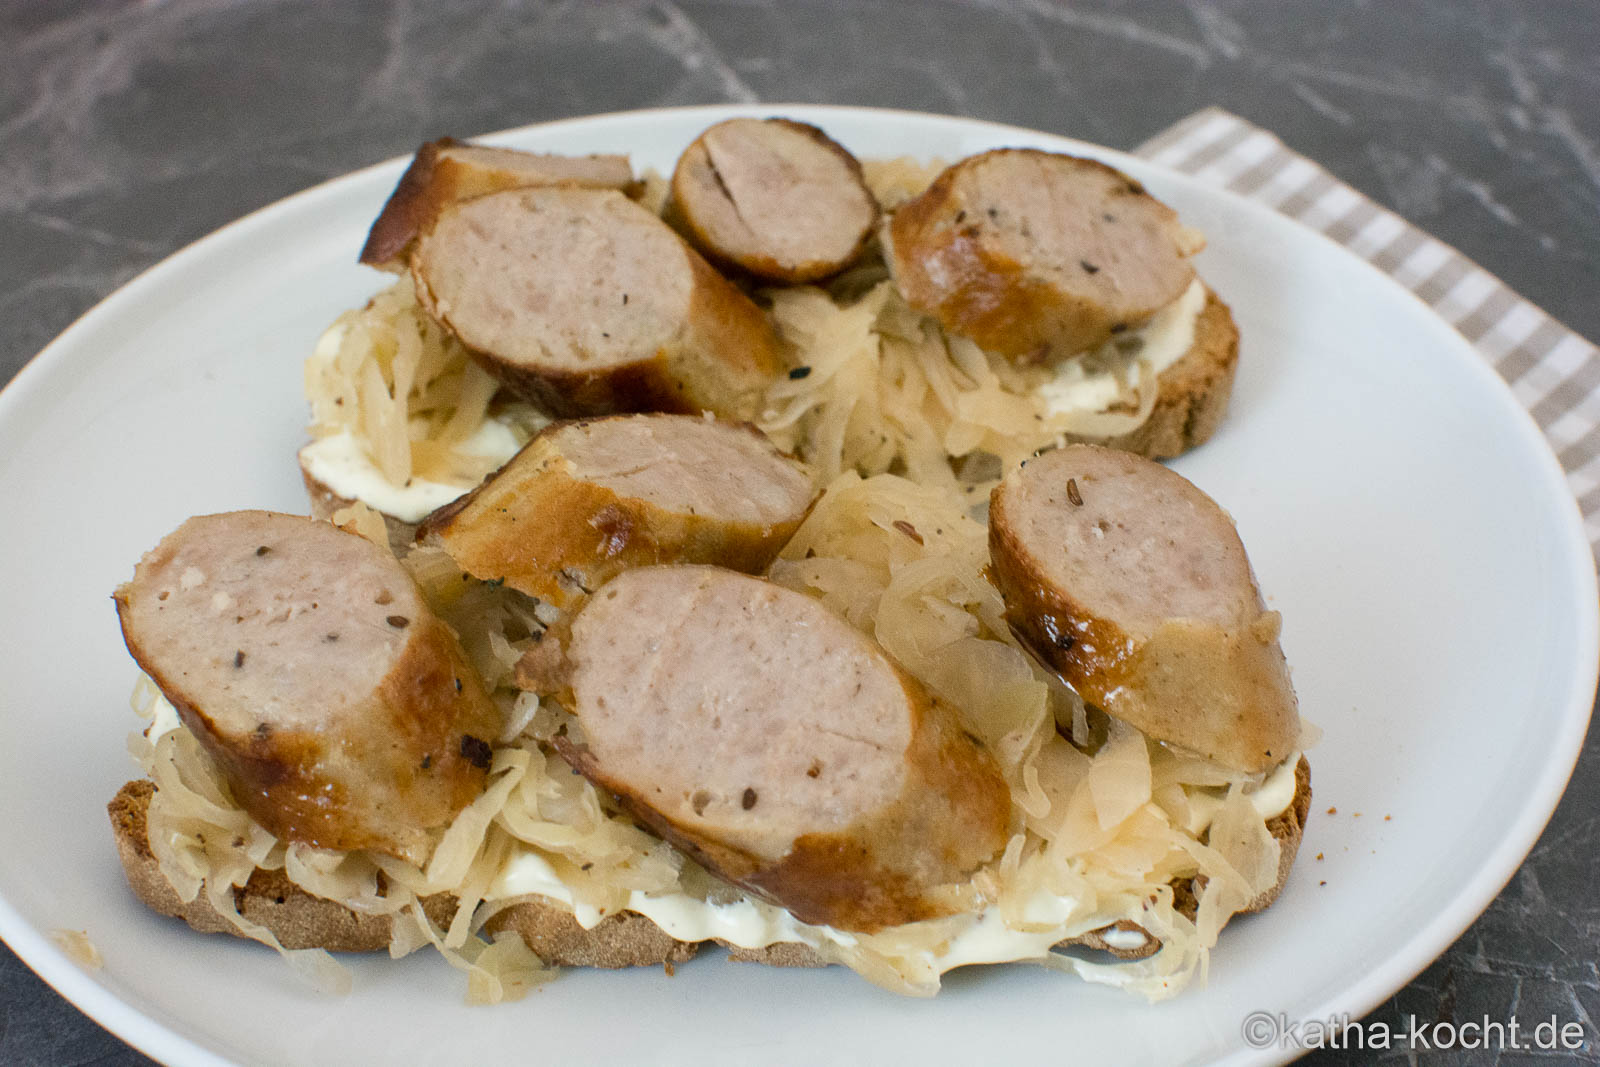 Bratwurst und Sauerkraut auf Brot - Katha-kocht!